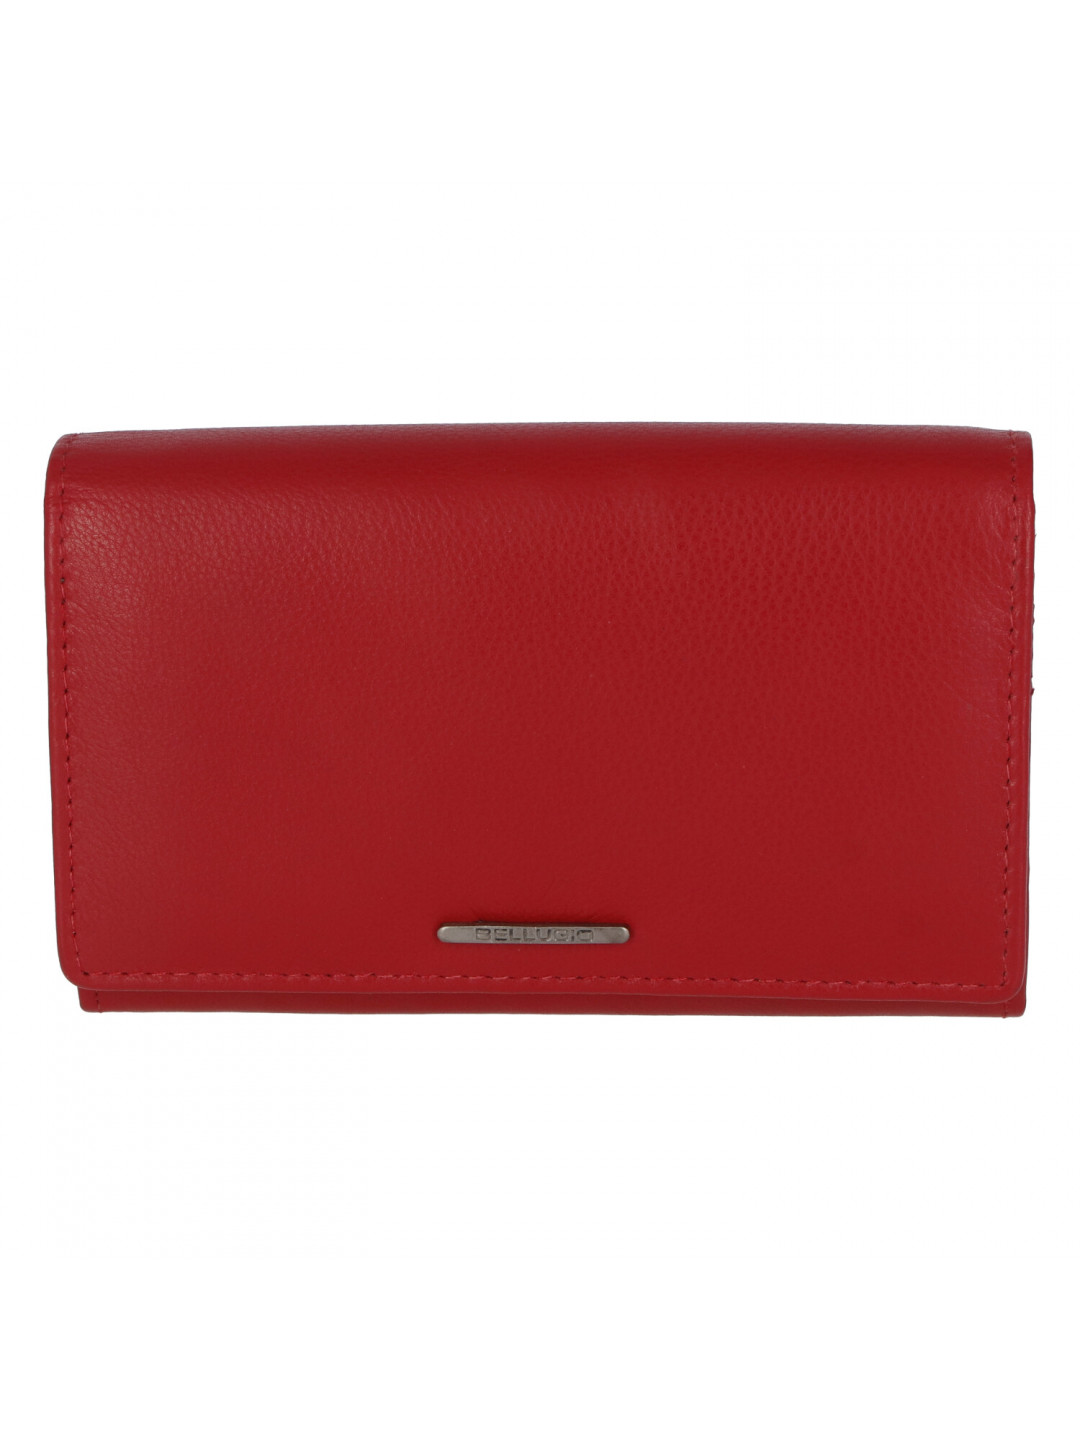 Dámská kožená peněženka červená – Bellugio Rimis